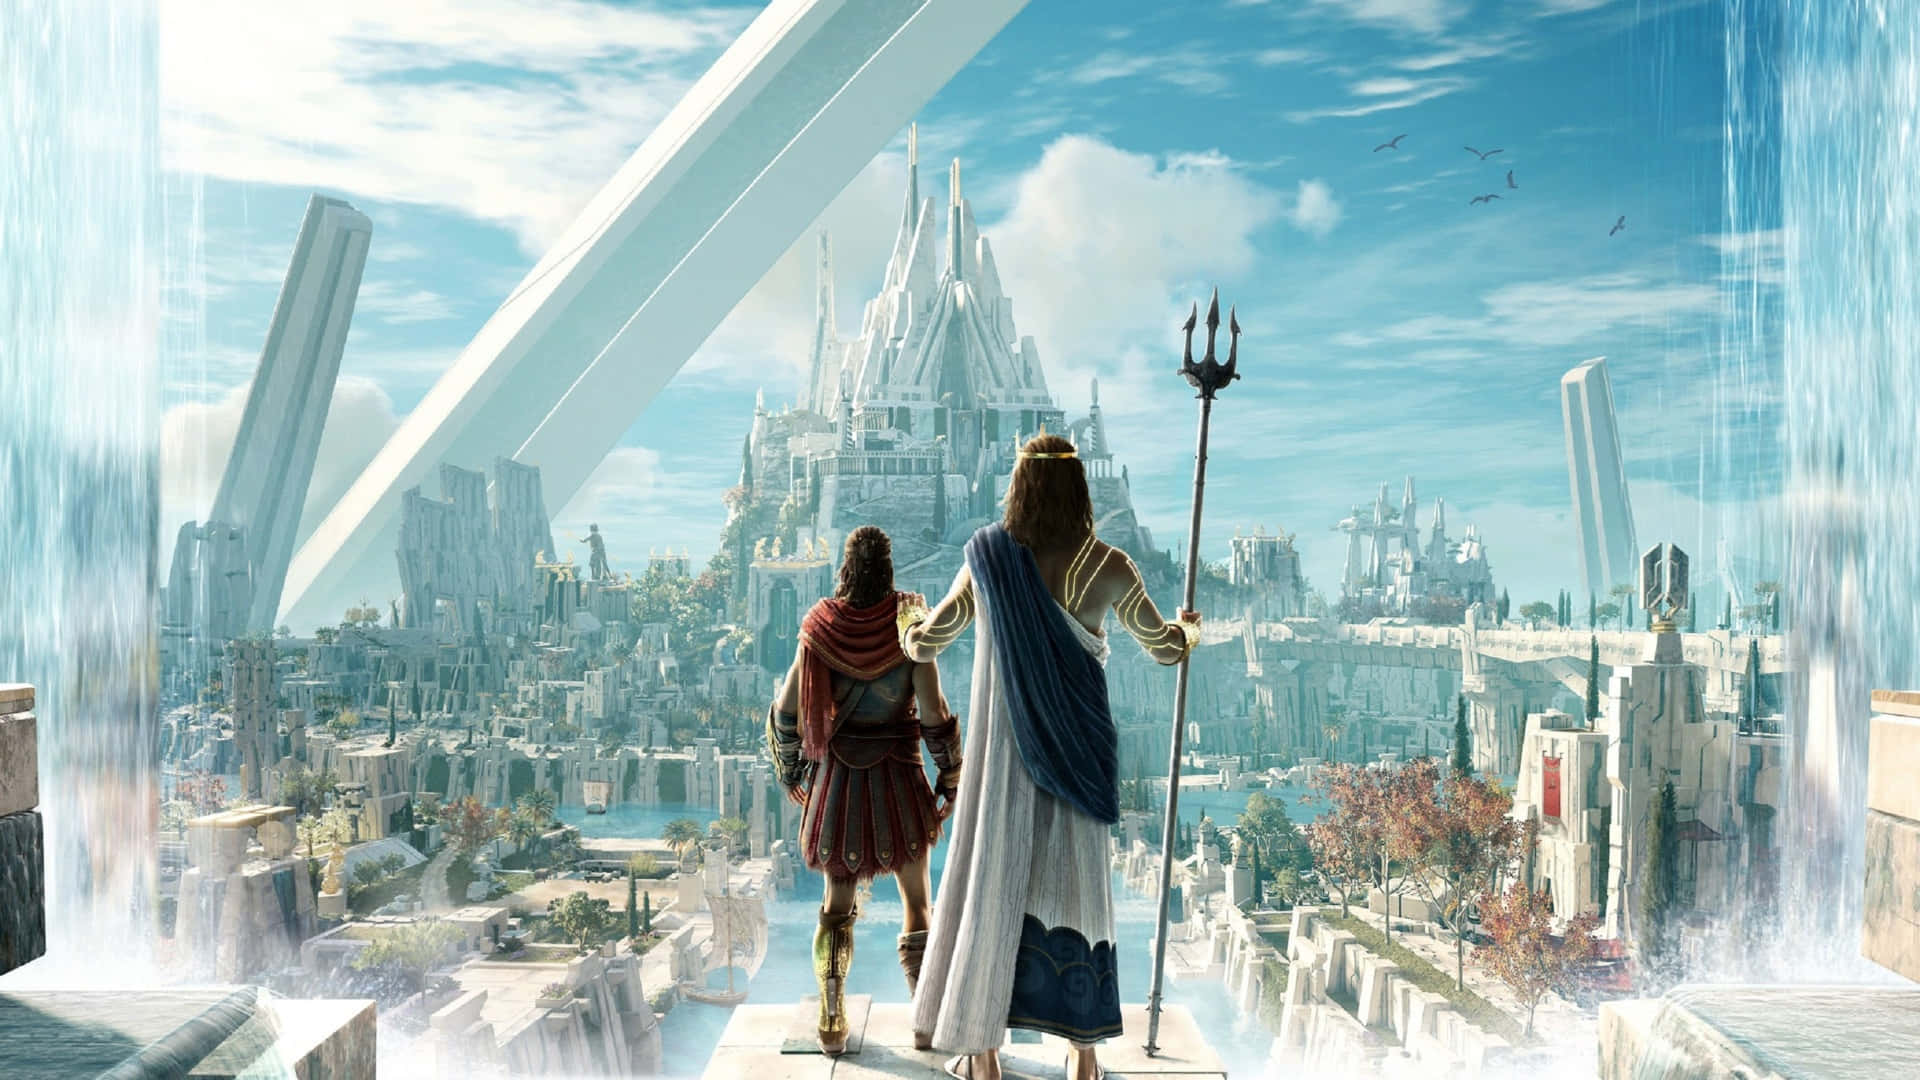 1920x1080bakgrundsbild Till Assassin's Creed Odyssey Atlantis.